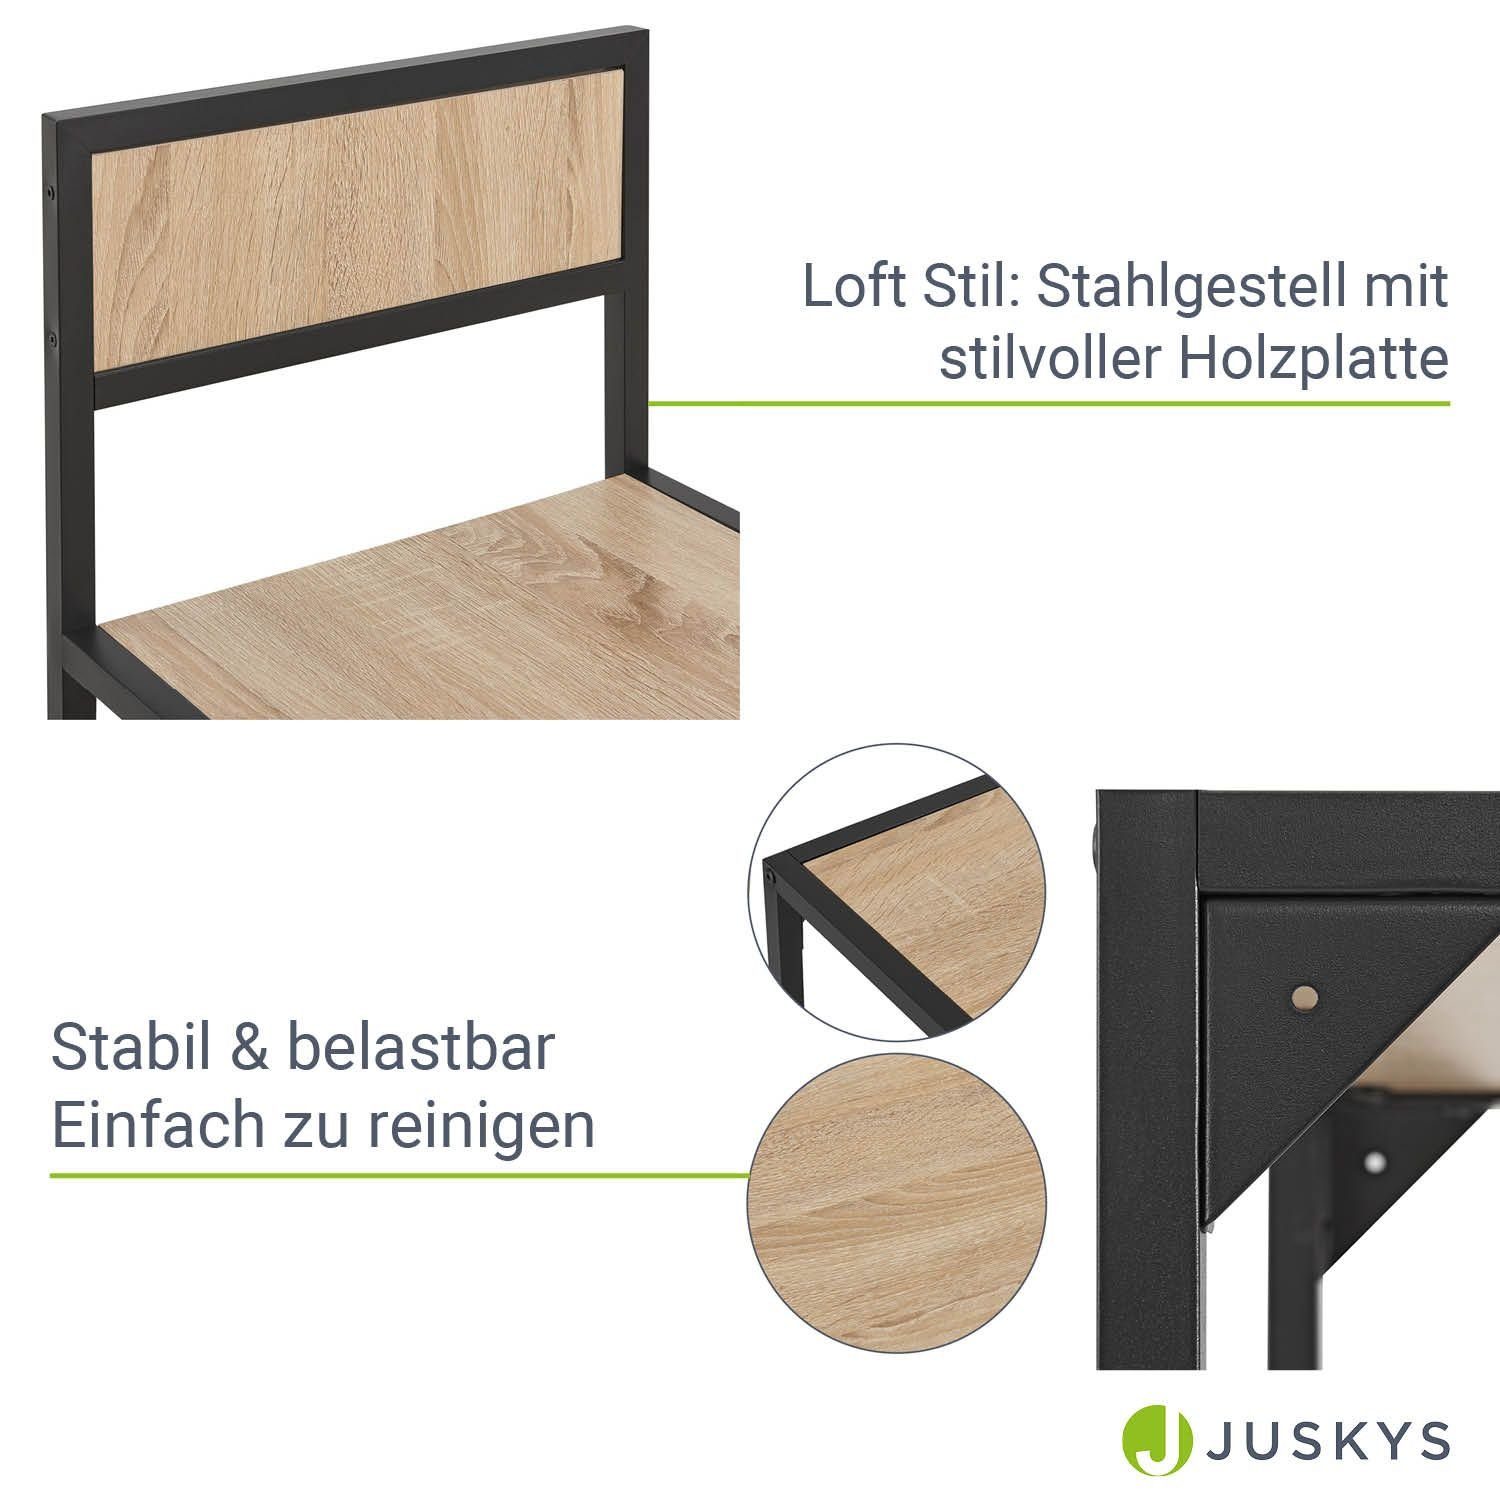 2 Juskys platzsparend, Design Graue Industrial Personen, klein, für Küchentisch, 3-teilig, Holzoptik